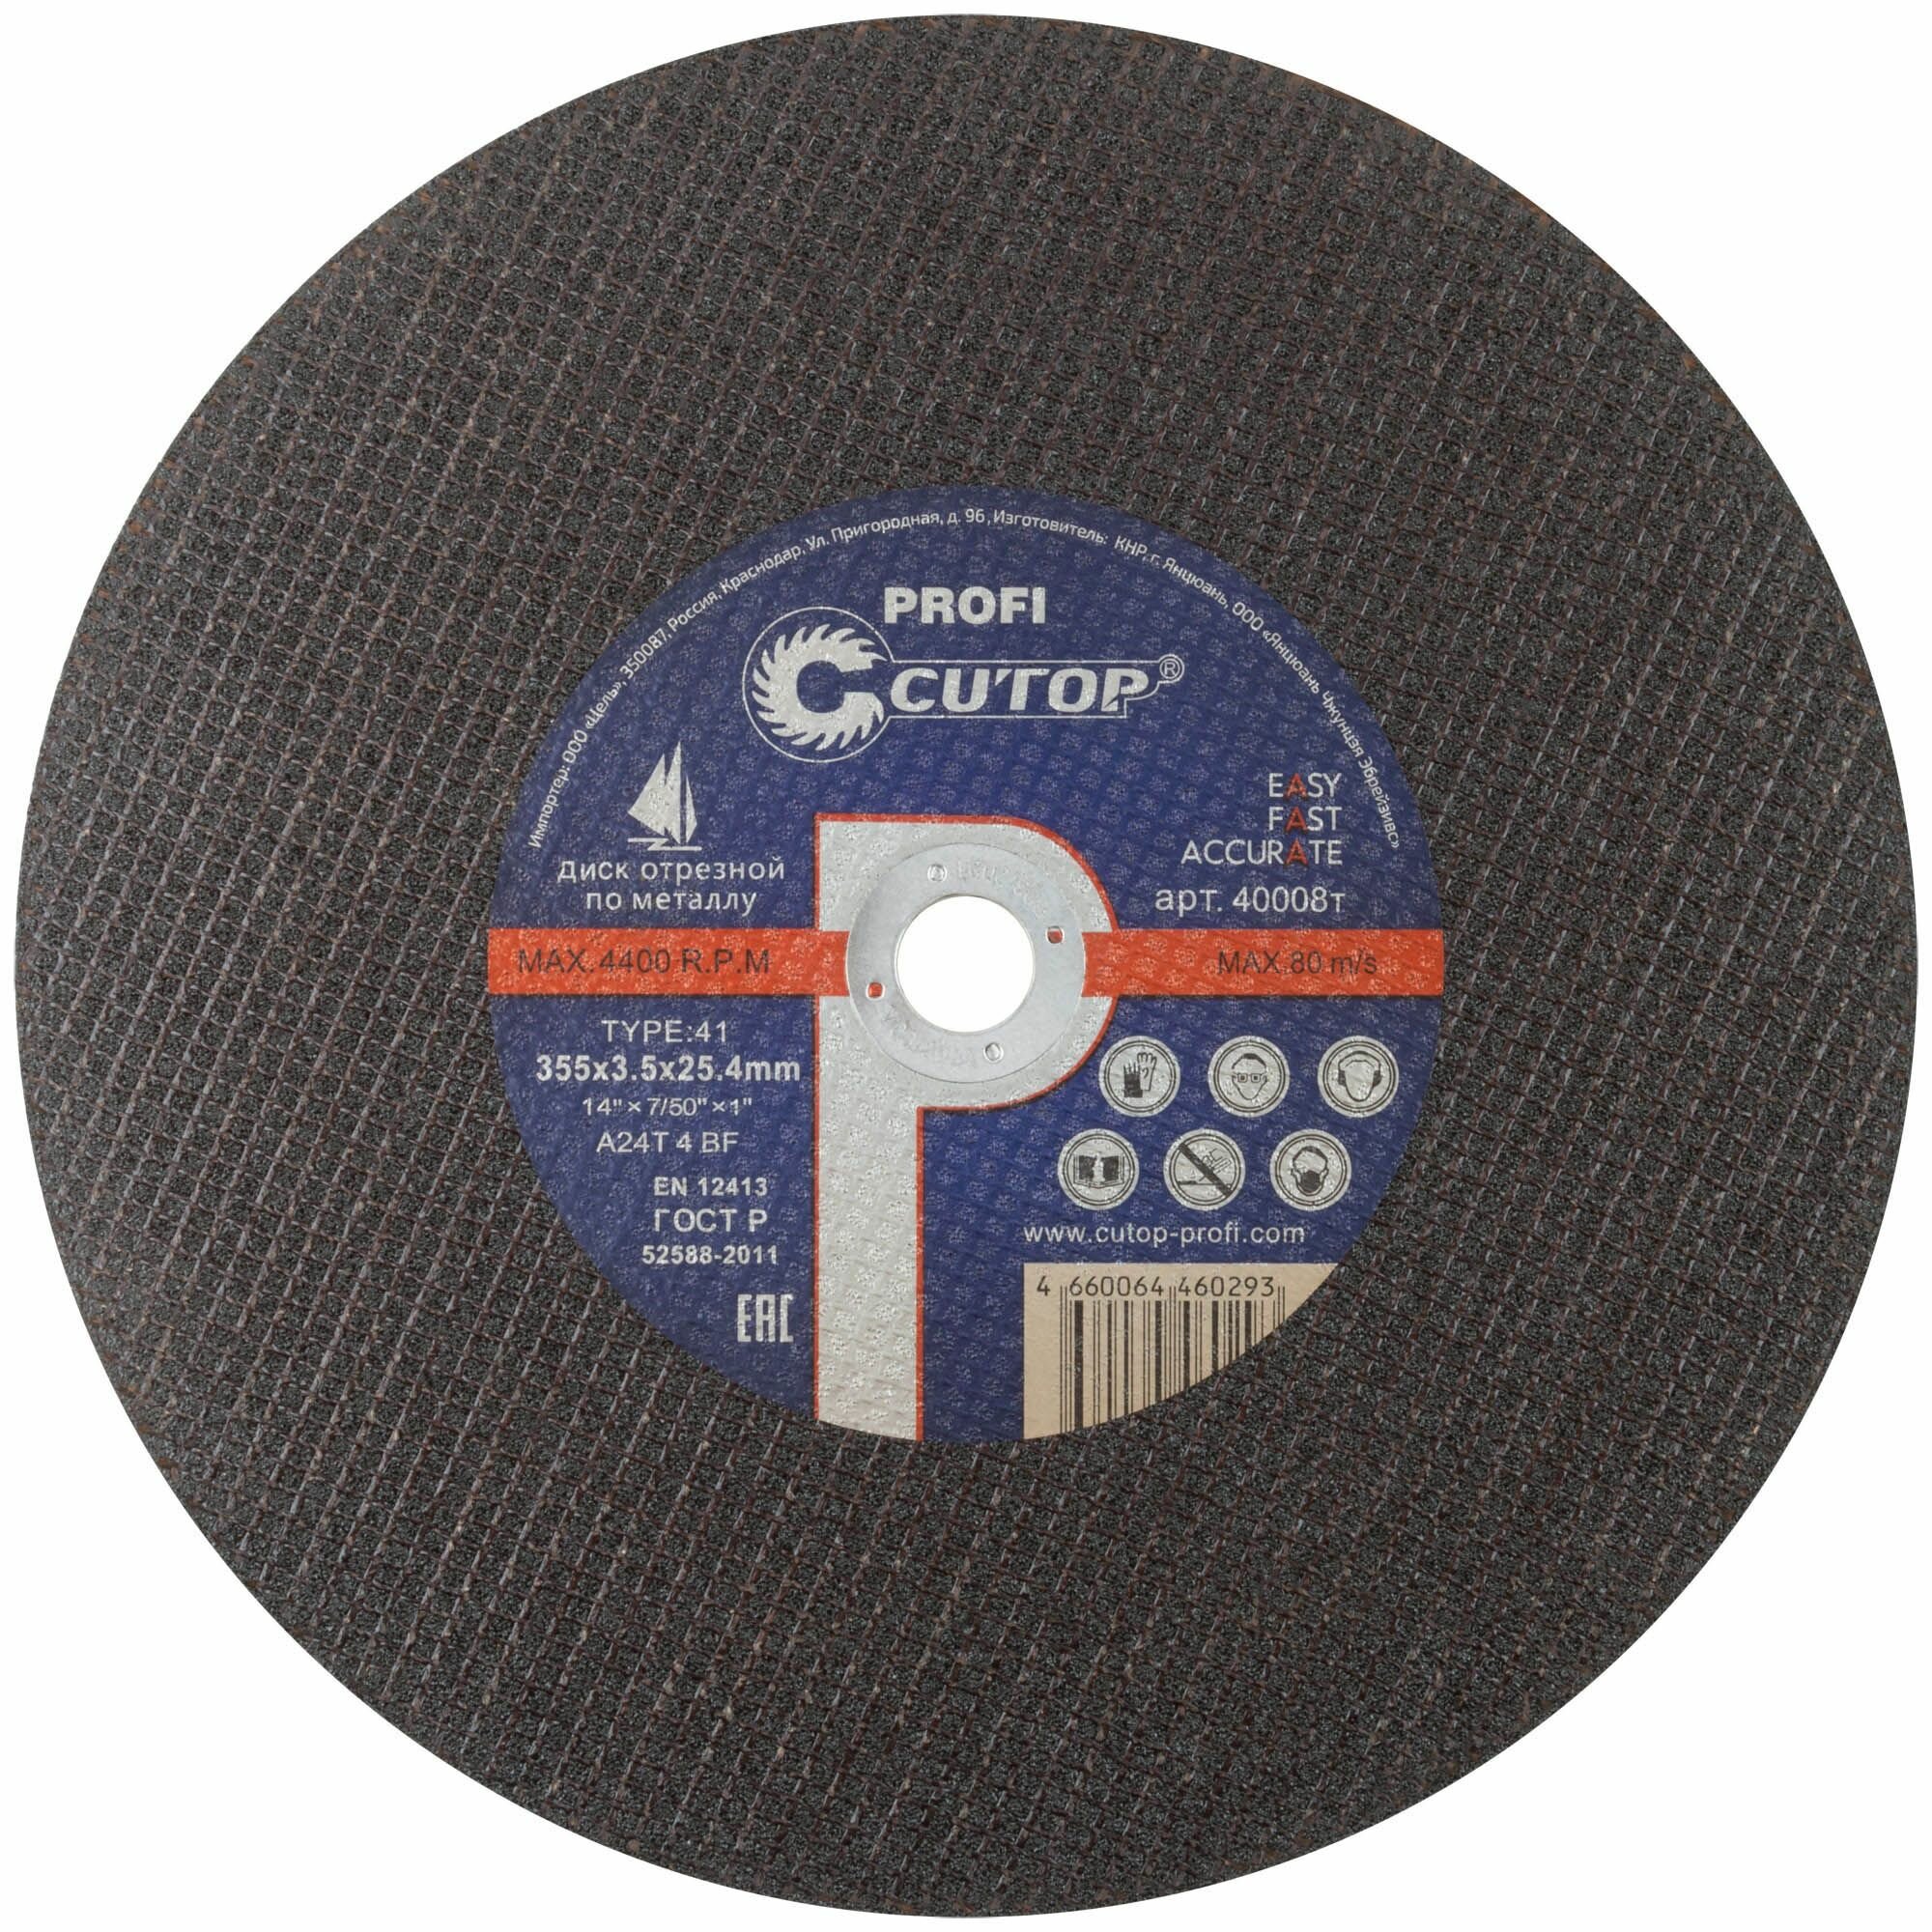 Профессиональный диск отрезной по металлу Т41-355 х 3,5 х 25,4 мм, Cutop Profi 5 штук